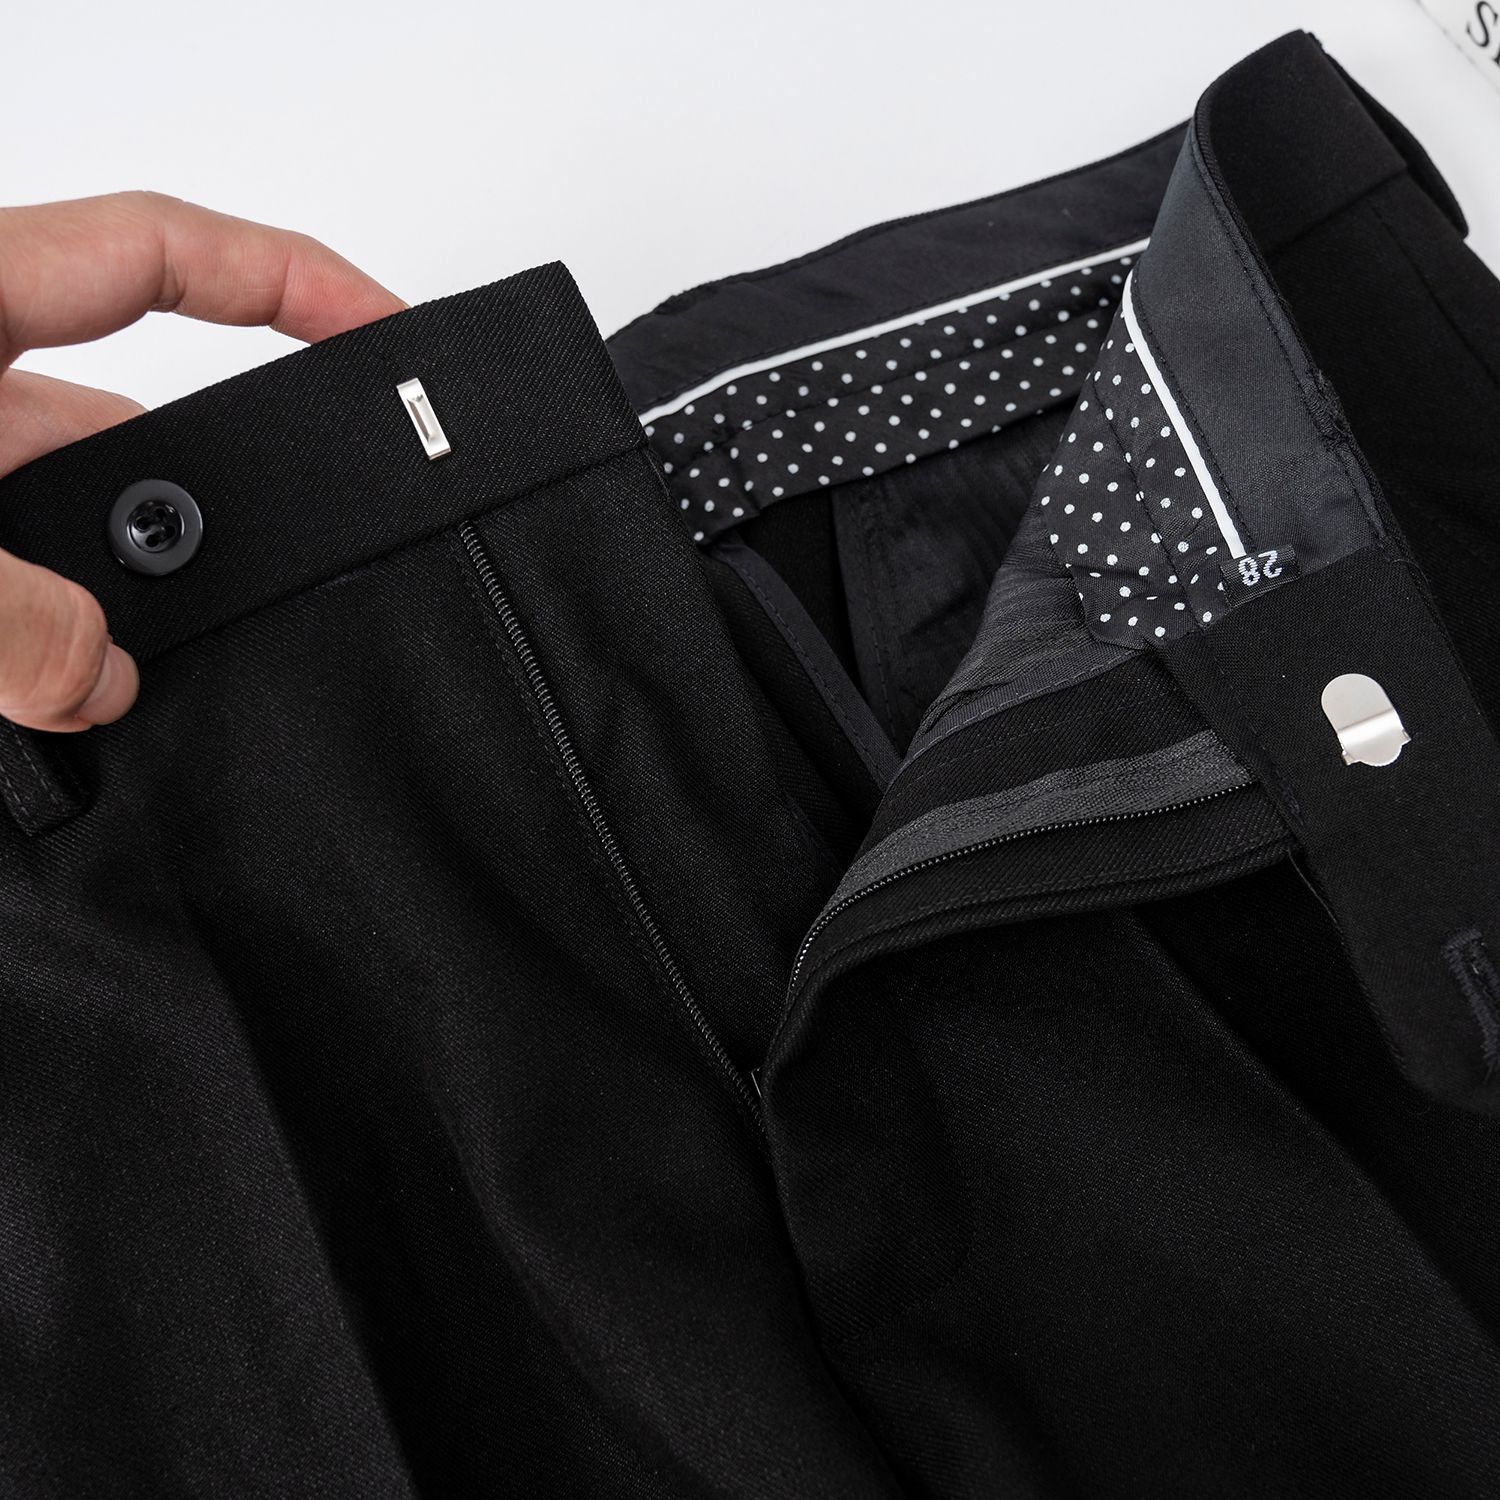  Quần âu ống đứng nam QD01 - quần tây TUTO5 Menswear Slim fit Premium 